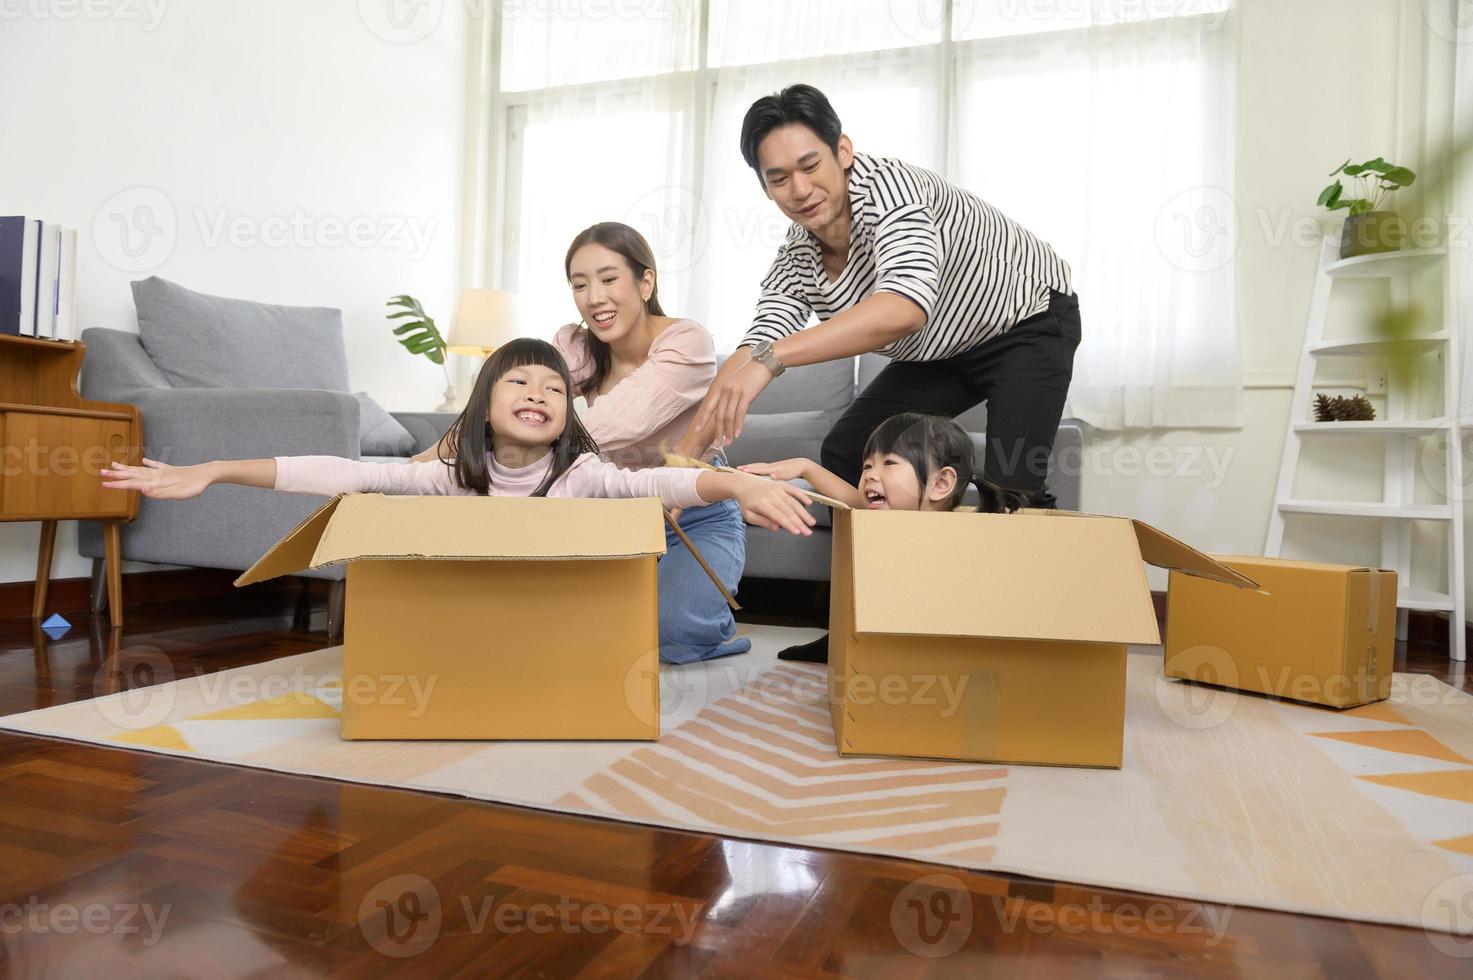 asiatico famiglia marito e moglie e bambini con cartone scatole avendo divertimento su in movimento giorno, mutuo, prestito, proprietà e assicurazione concetto. foto